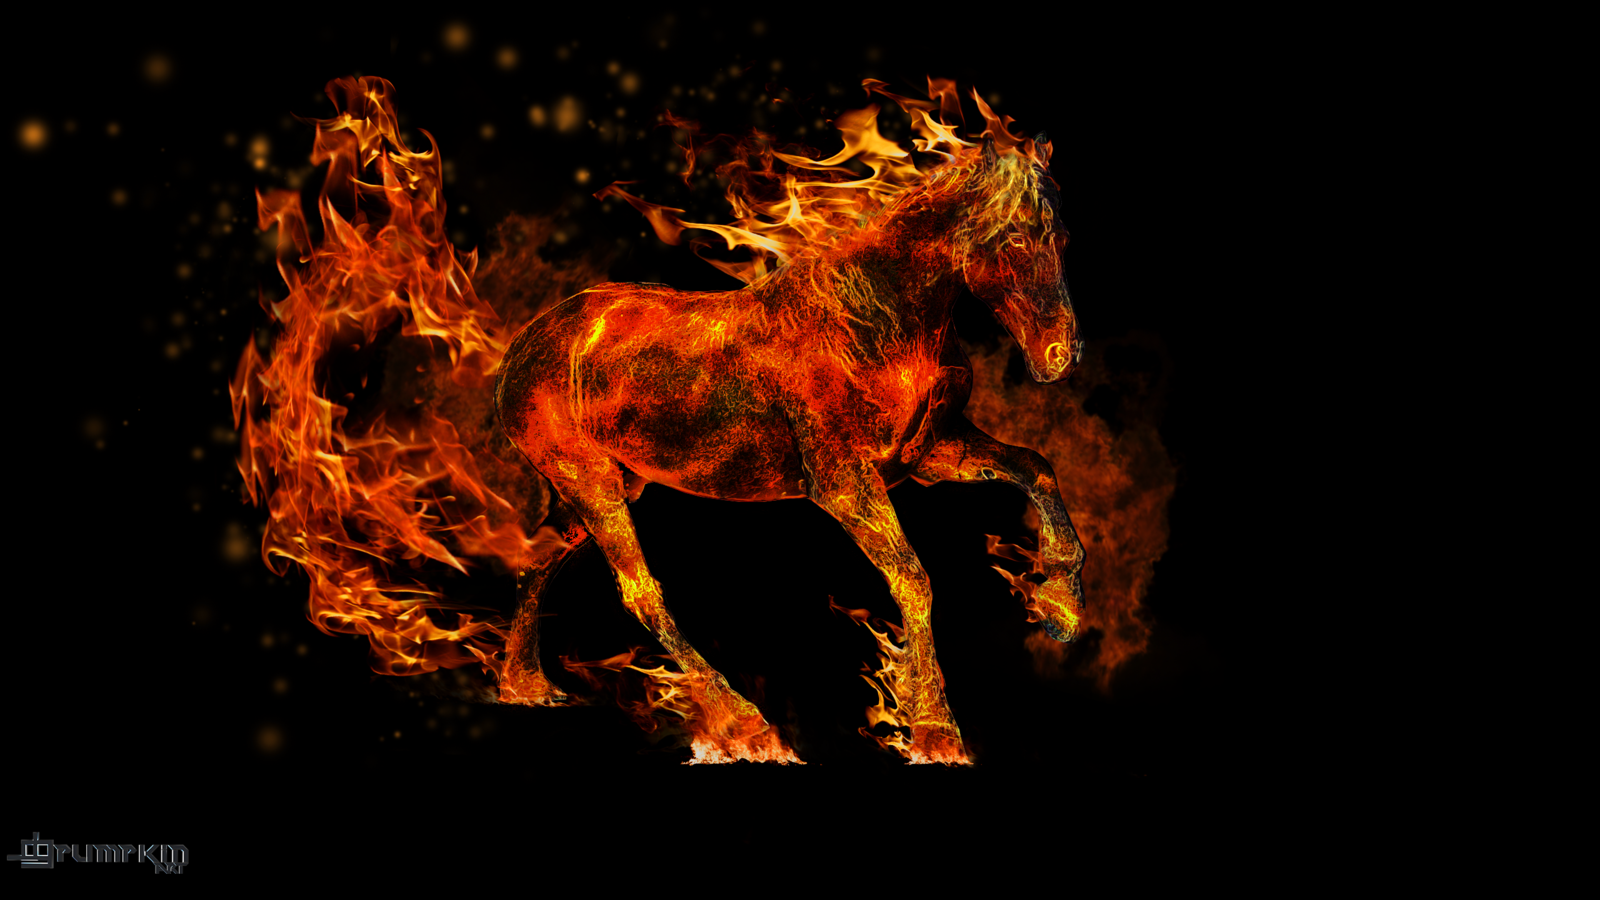 Ngựa lửa 3D đẹp, với một thiết kế hoàn toàn mới, không ngừng vận động và lấp lánh. Những ngọn lửa bùng phát khiến người xem cảm thấy như đang tham gia vào một cuộc phiêu lưu khám phá mới lạ. Cùng khám phá và tận hưởng sự mới mẻ của ngựa lửa 3D đẹp nhất hiện nay.